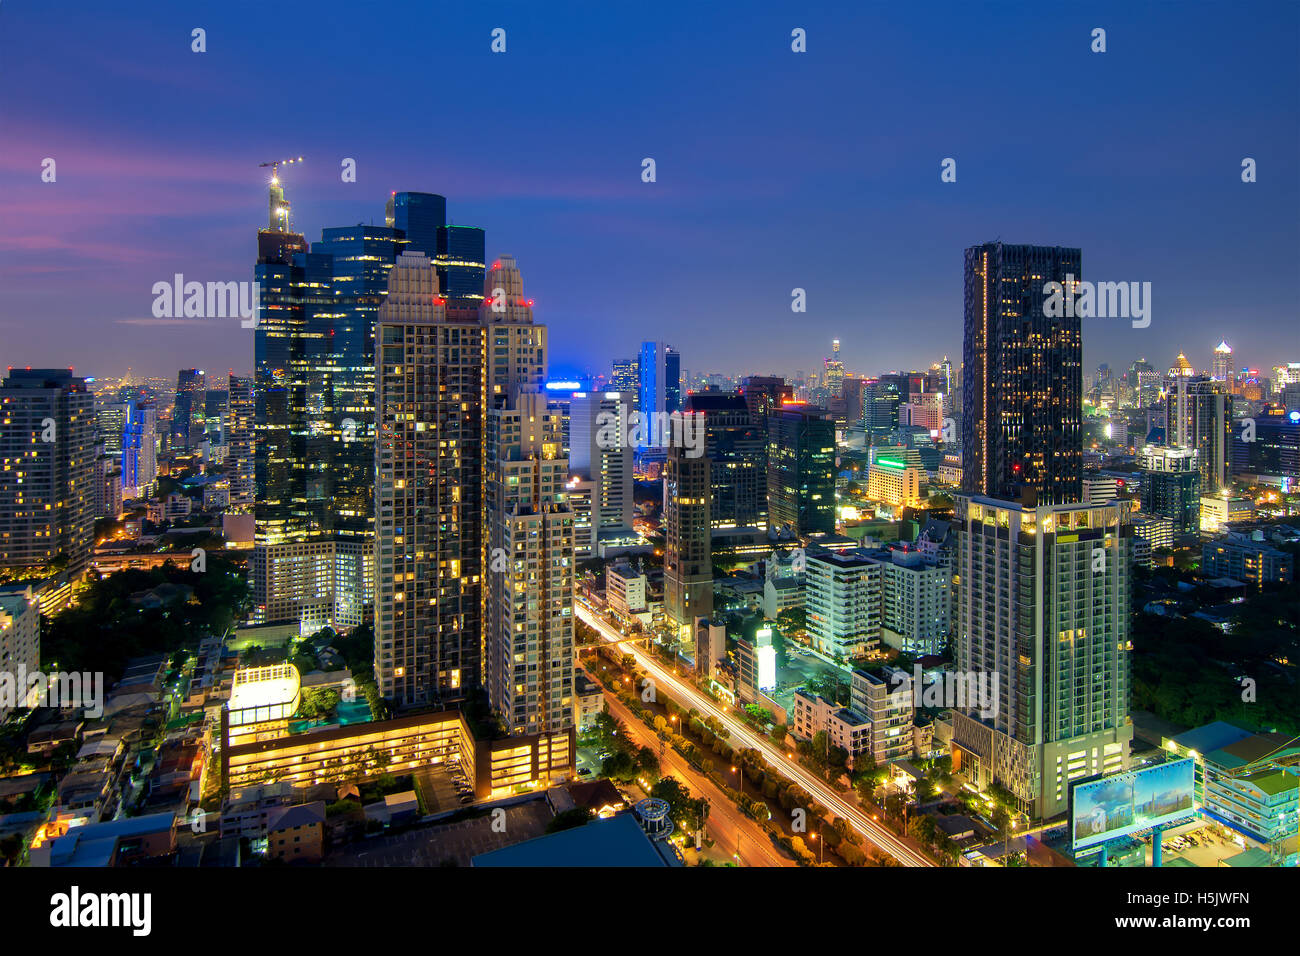 Bangkok-Nachtansicht mit Hochhaus im Geschäftsviertel Sathon Silom in Bangkok Thailand. Stockfoto